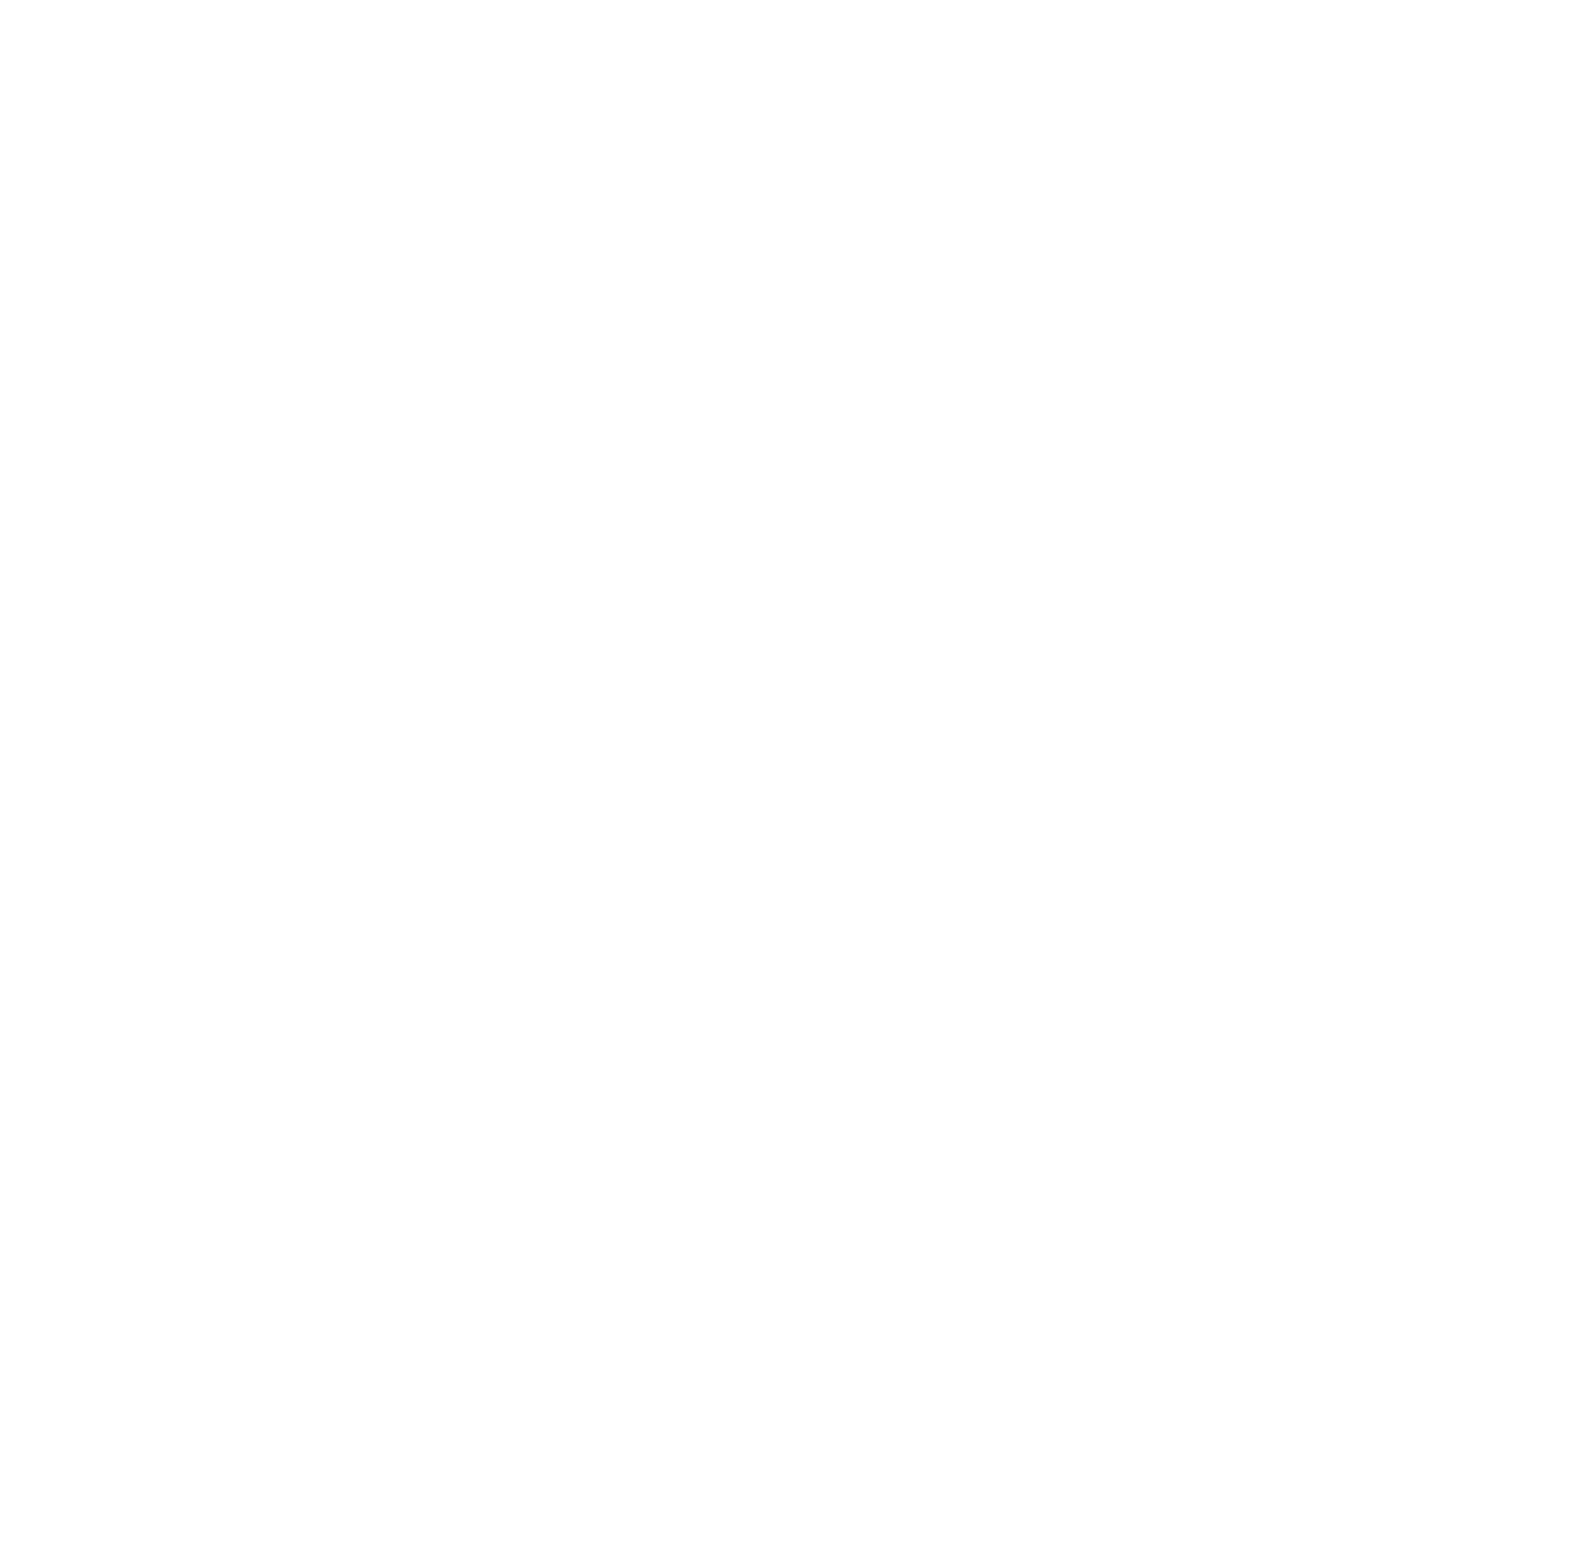 Persimmon logo pour fonds sombres (PNG transparent)